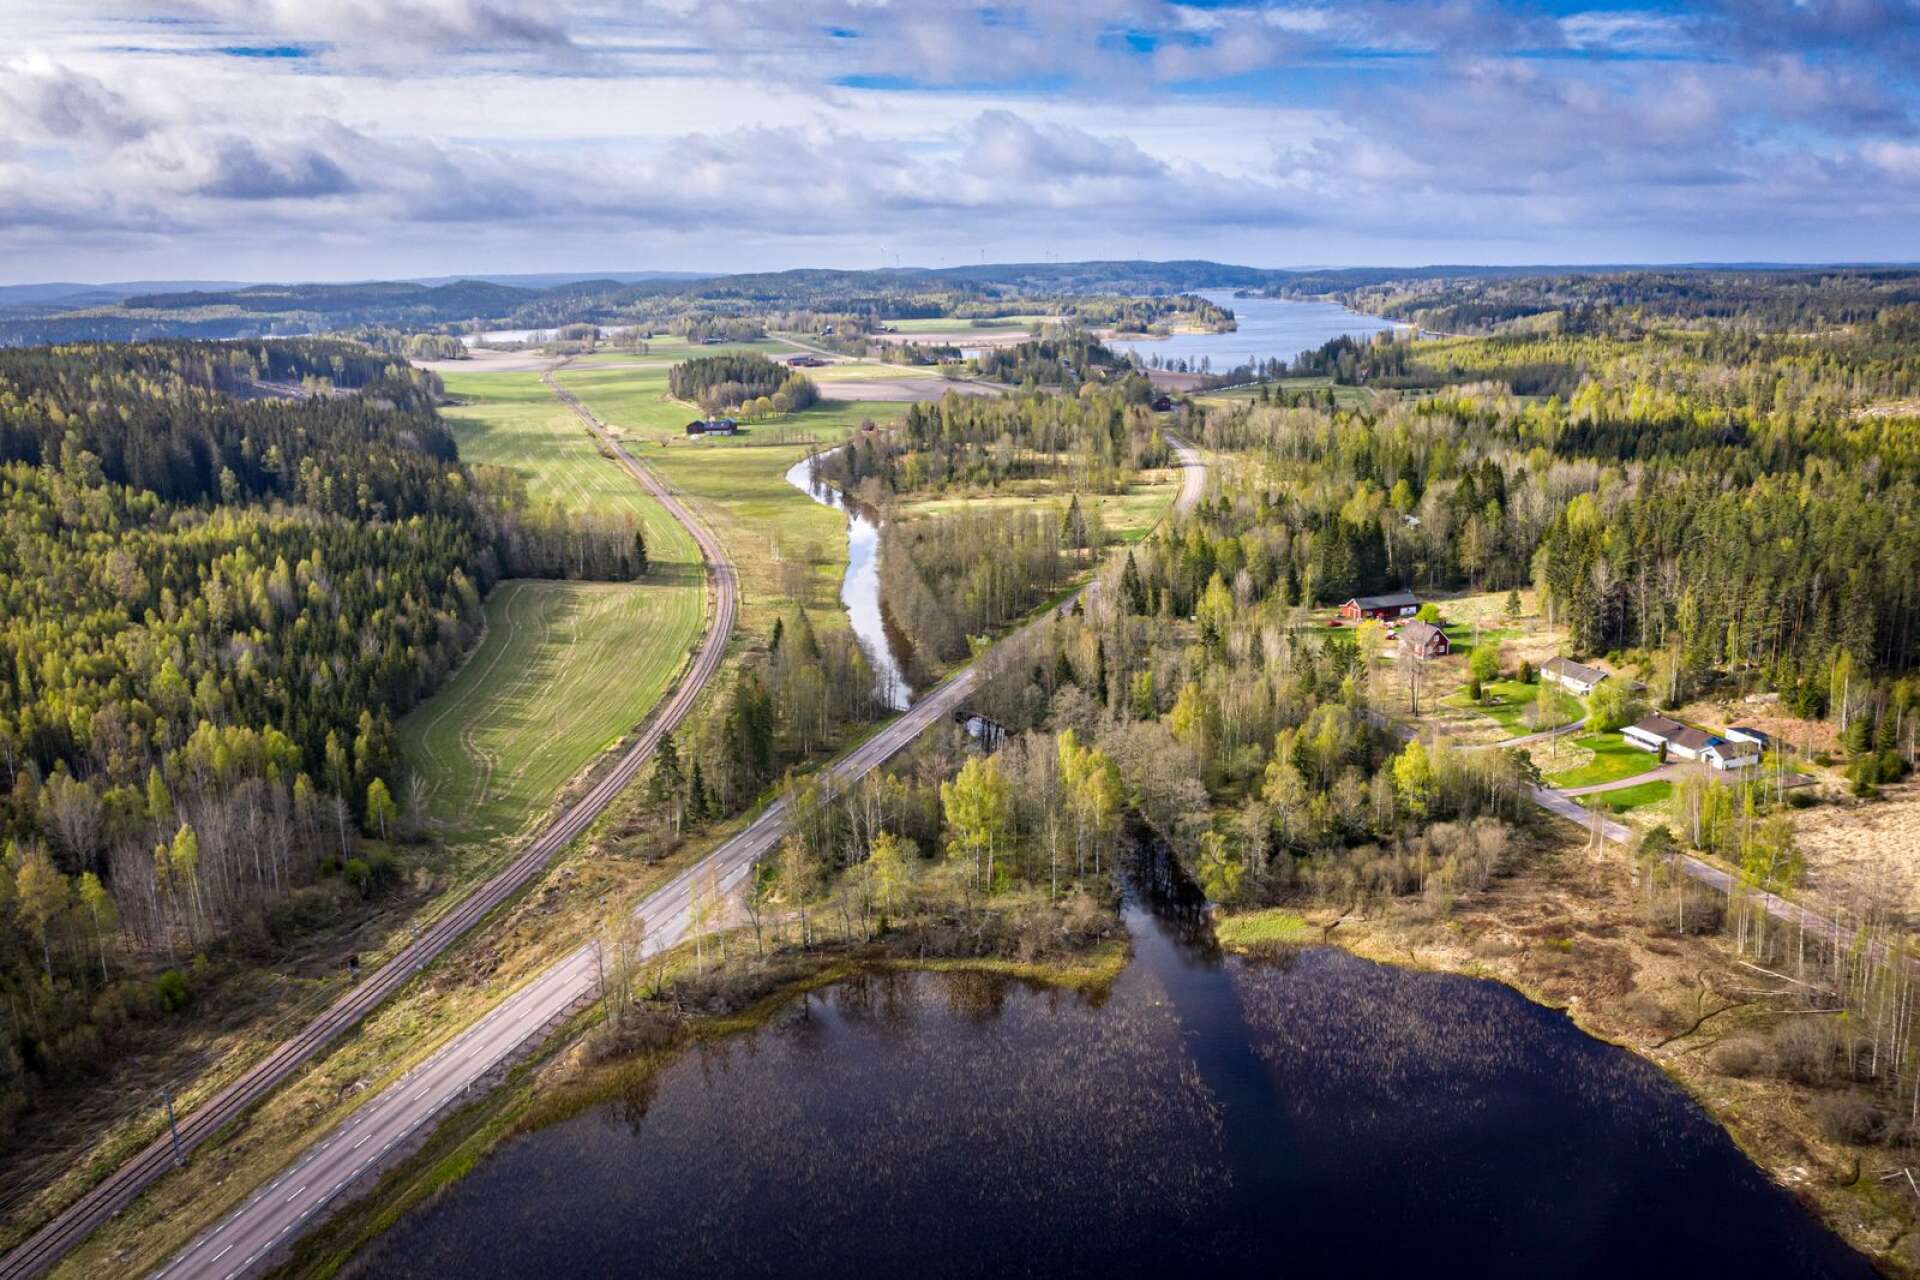 På vägen från Kristinehamn till Storfors passeras Norsbäckens kanal, en av Sveriges äldsta kanaler anlades 1640. Här möts tre generationers transportleder. Kanalen som ersattes av järnvägen som ersattes av bilvägen.